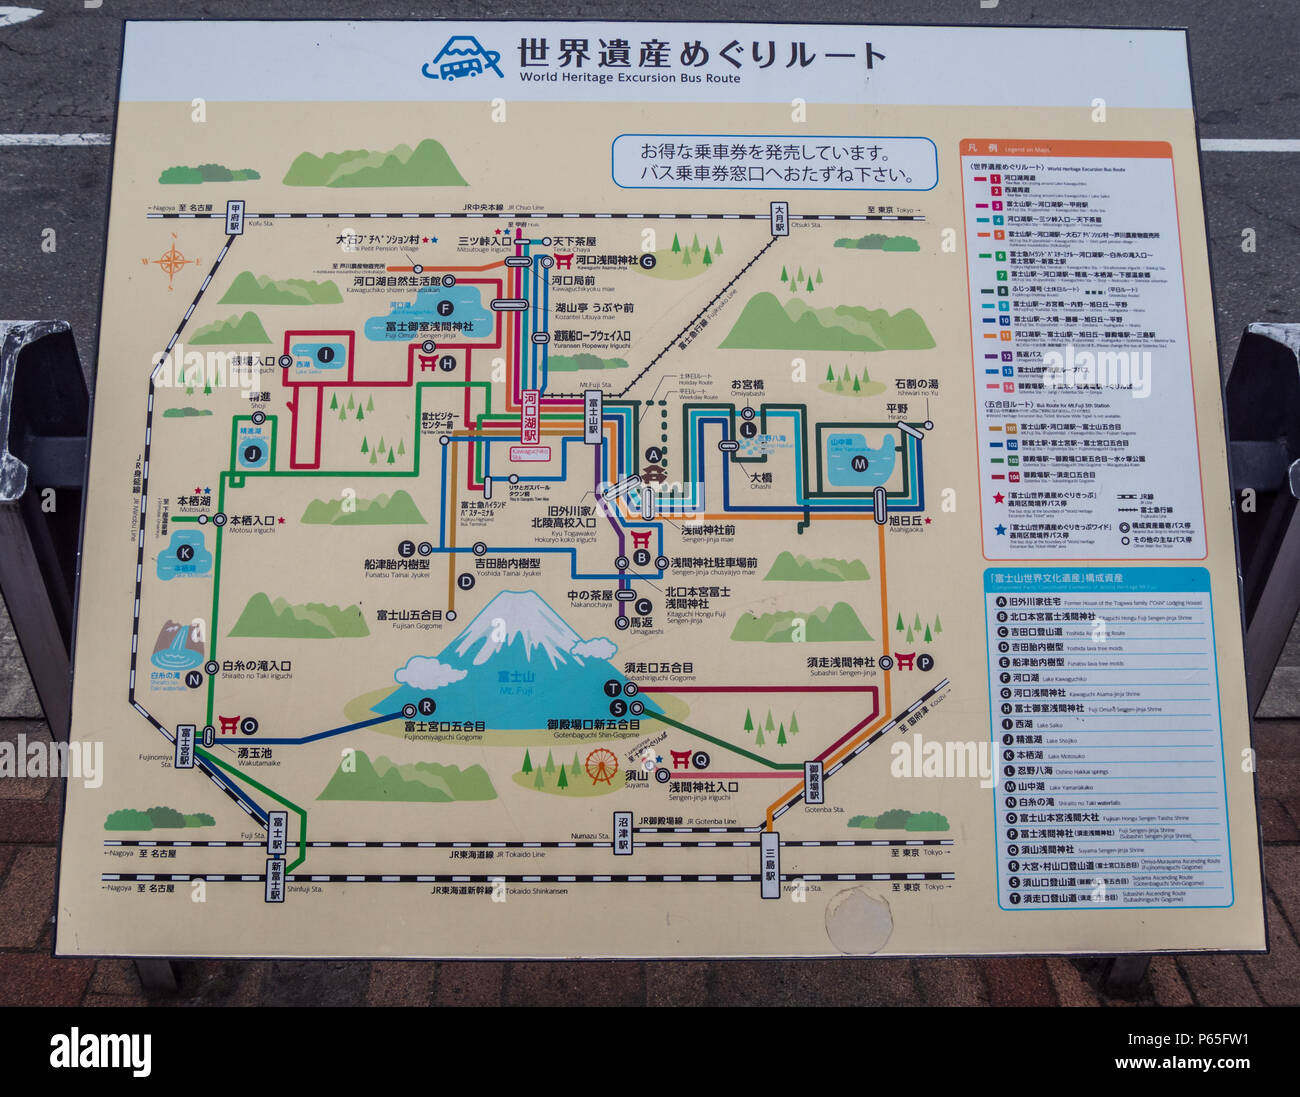 Mappa dell'area Kawaguchiko intorno al Monte Fuji in Giappone - TOKYO / Giappone - 17 giugno 2018 Foto Stock